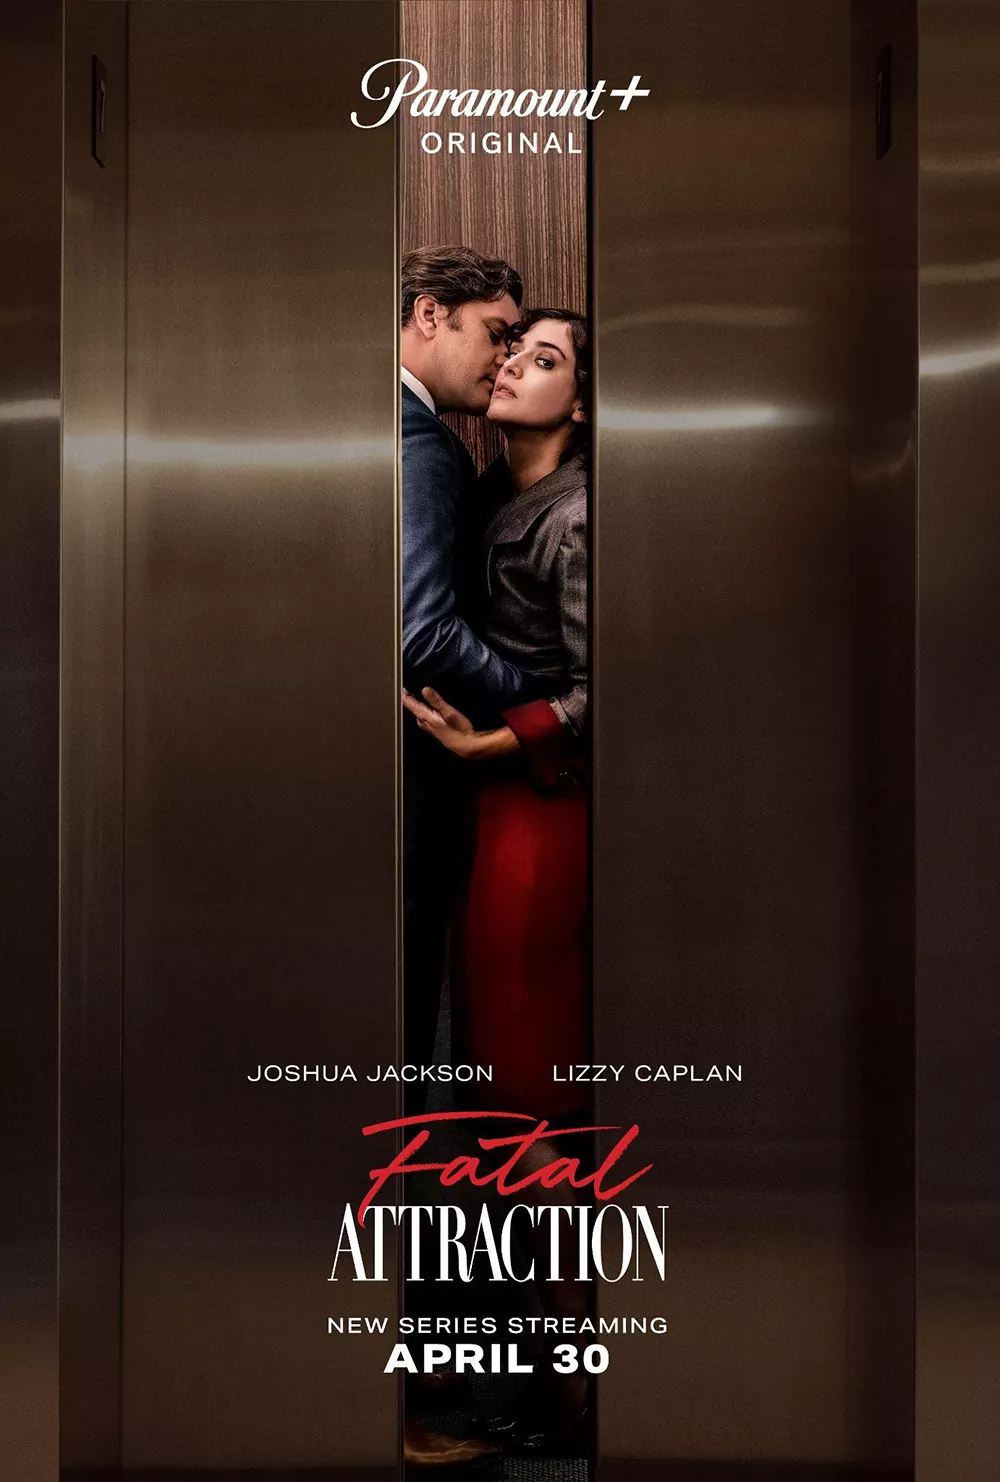 Trailer Από Τη Νέα Σειρά "Fatal Attraction"